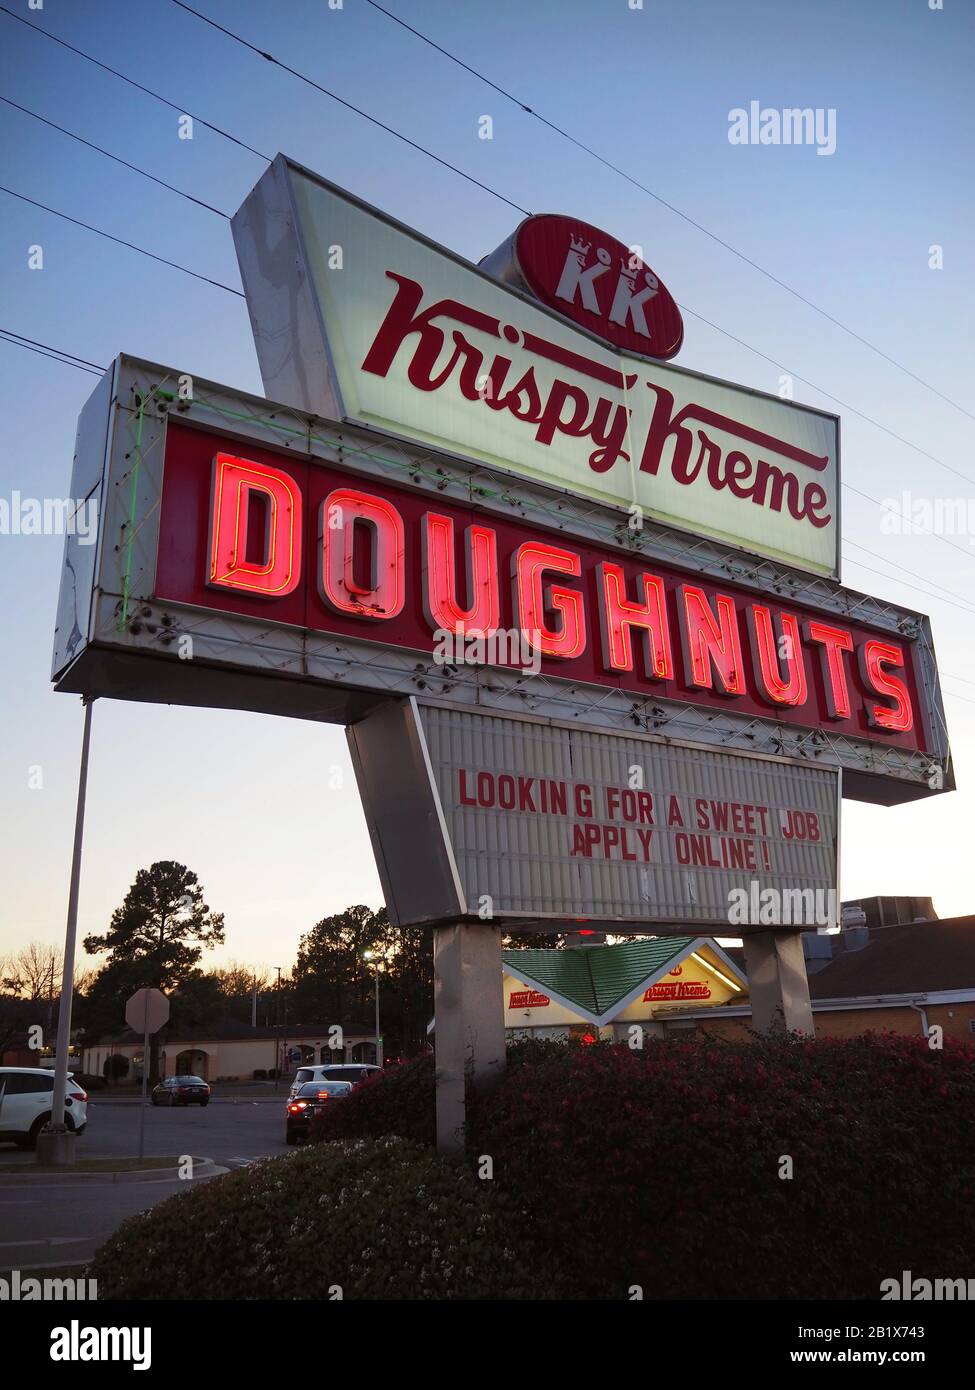 Savannah, GA - 22 FÉVRIER 2020: Un panneau néon lumineux rouge et blanc pour les beignets Krispy Kreme brille sur un coin de rue au crépuscule à Savannah, Géorgie. Banque D'Images